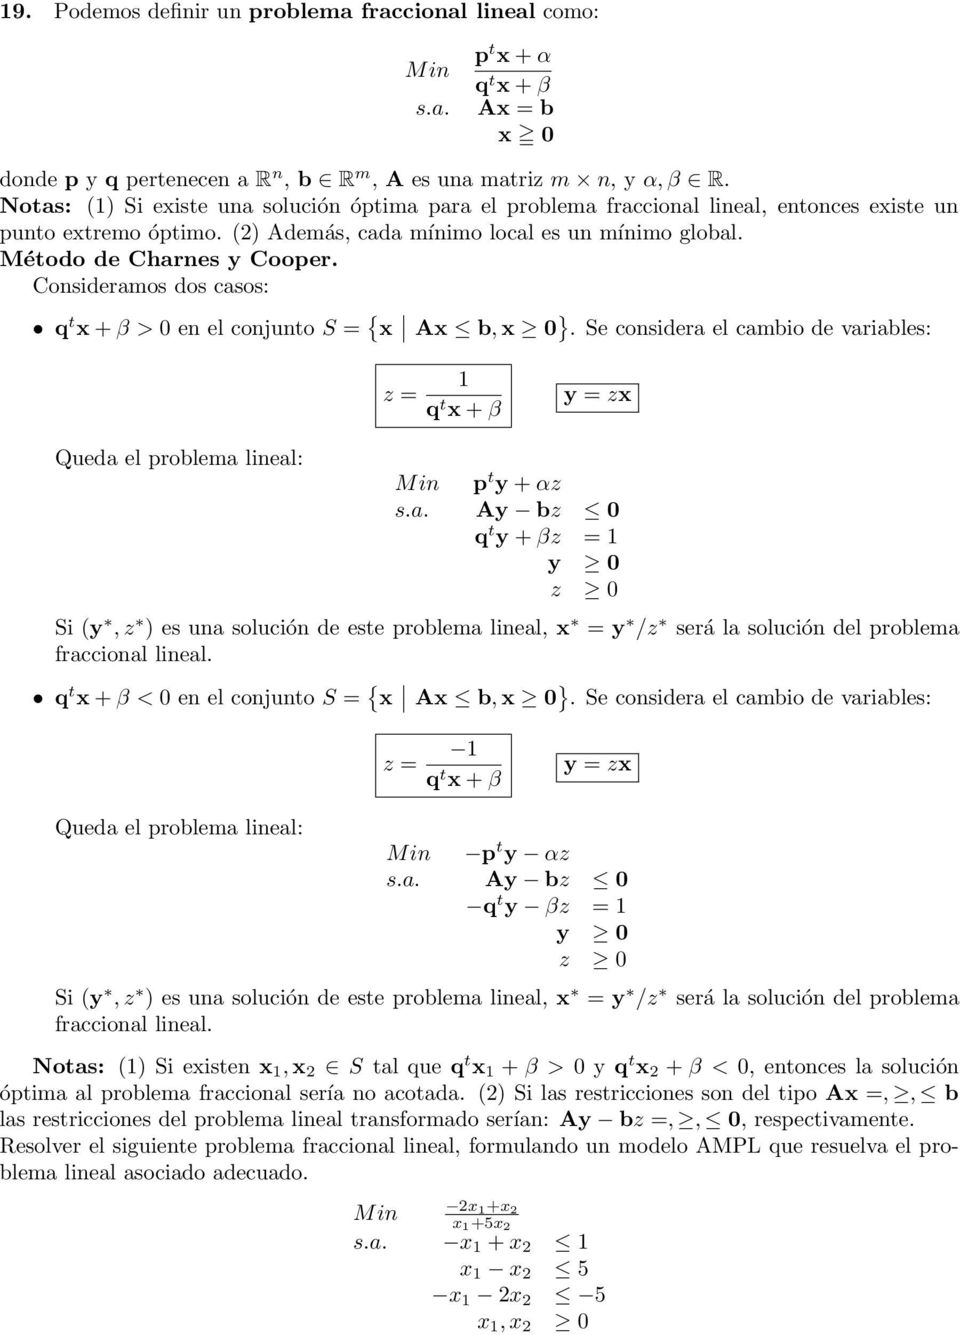 Consideramos dos casos: q t x + β > 0 en el conjunto S = { x Ax b, x 0 }. Se considera el cambio de variables: z = 1 q t x + β y = zx Queda el problema lineal: p t y + αz s.a. Ay bz 0 q t y + βz = 1 y 0 z 0 Si (y, z ) es una solución de este problema lineal, x = y /z será la solución del problema fraccional lineal.